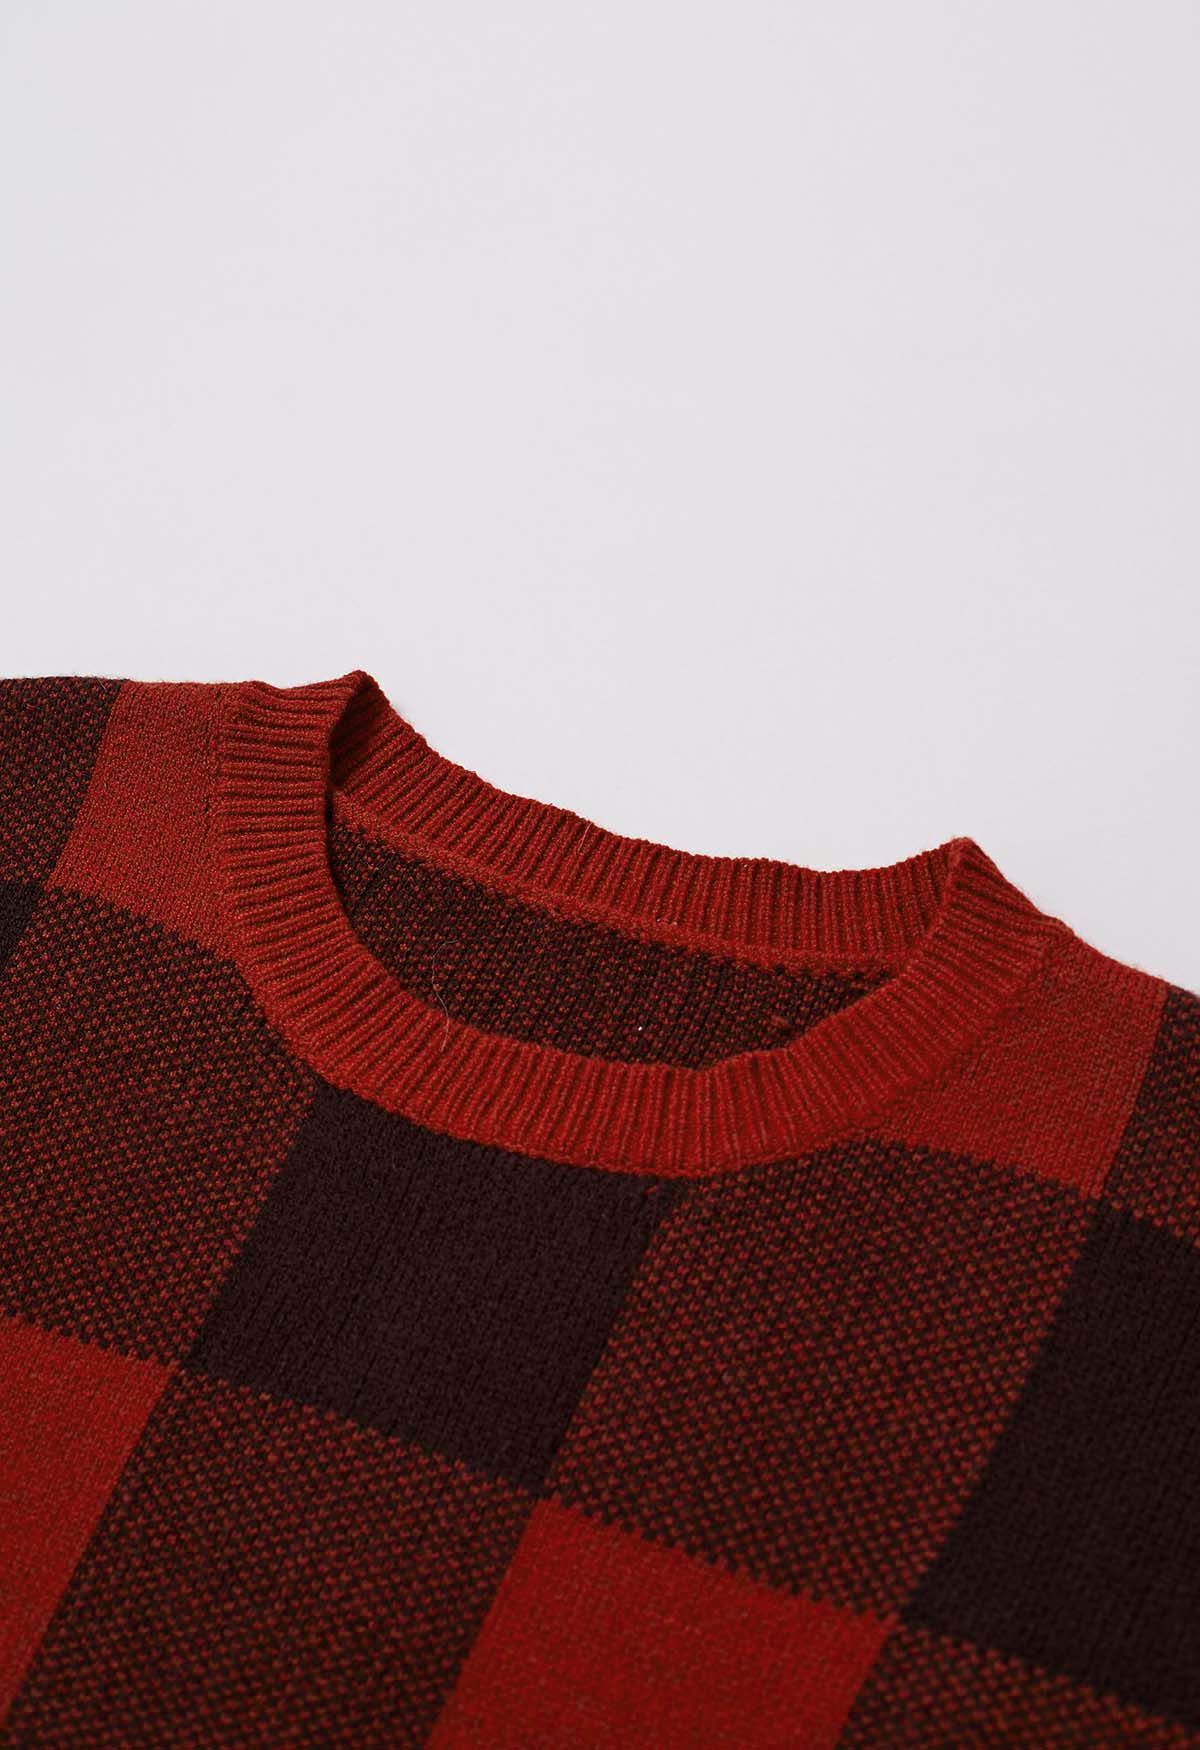 Vogue Check Pattern Knit Sweater